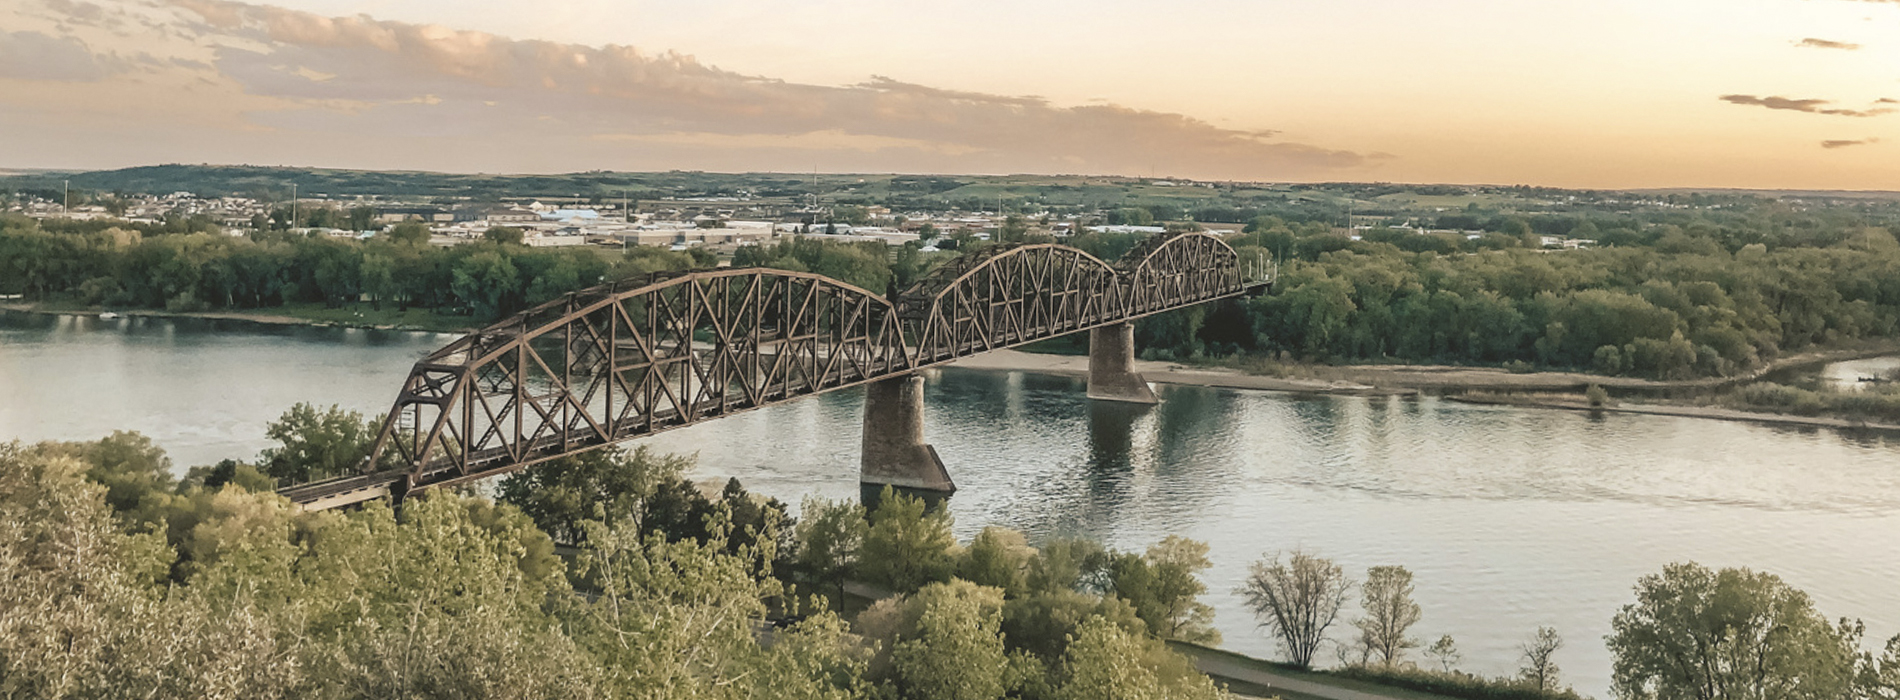 Bridge over the Missouri River between Bismarck and Mandan, ND